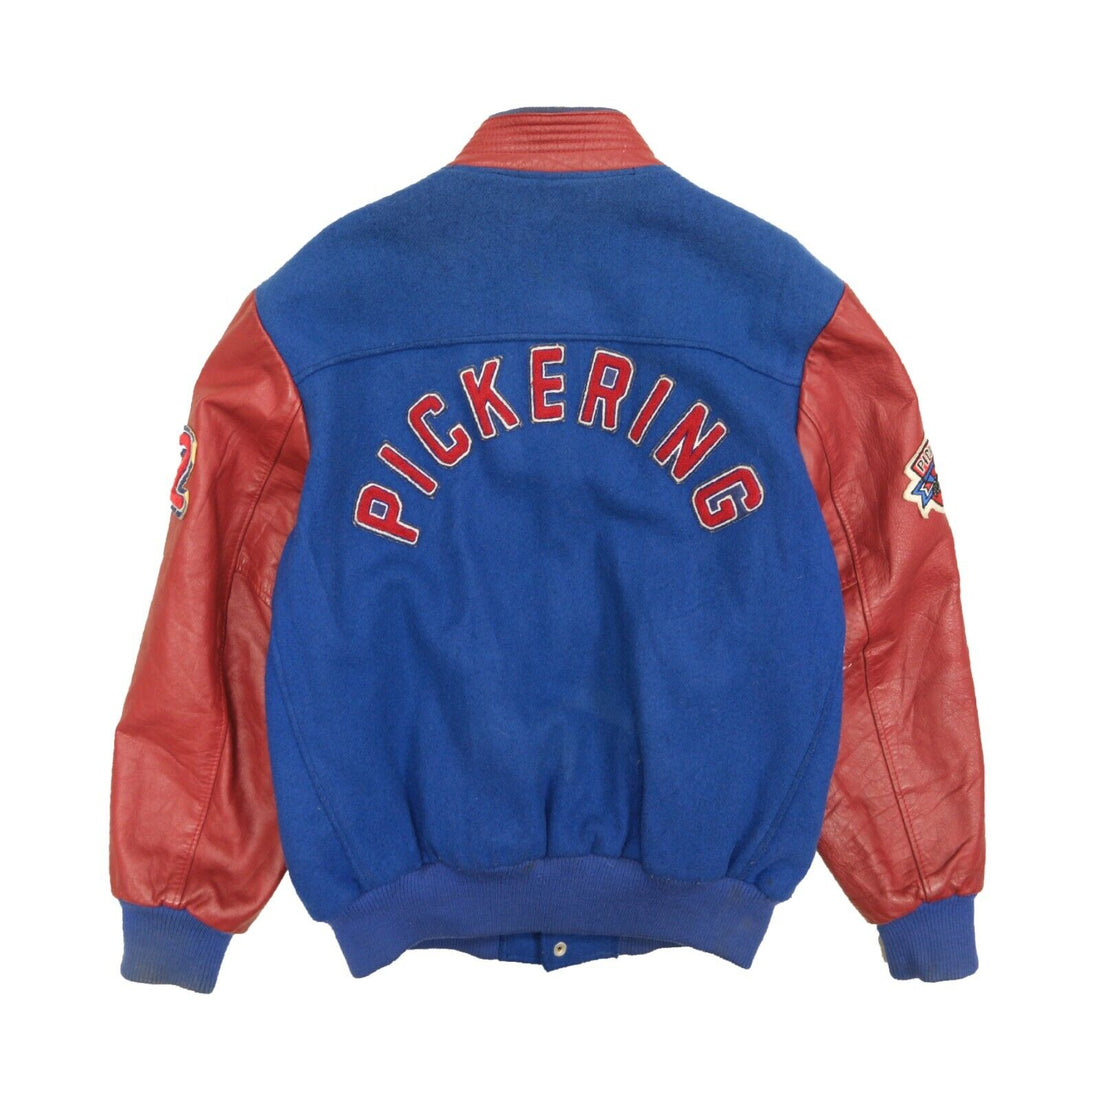 Vintage Pickering Hockey Association Leather Wool Varsity Jacket Size Large